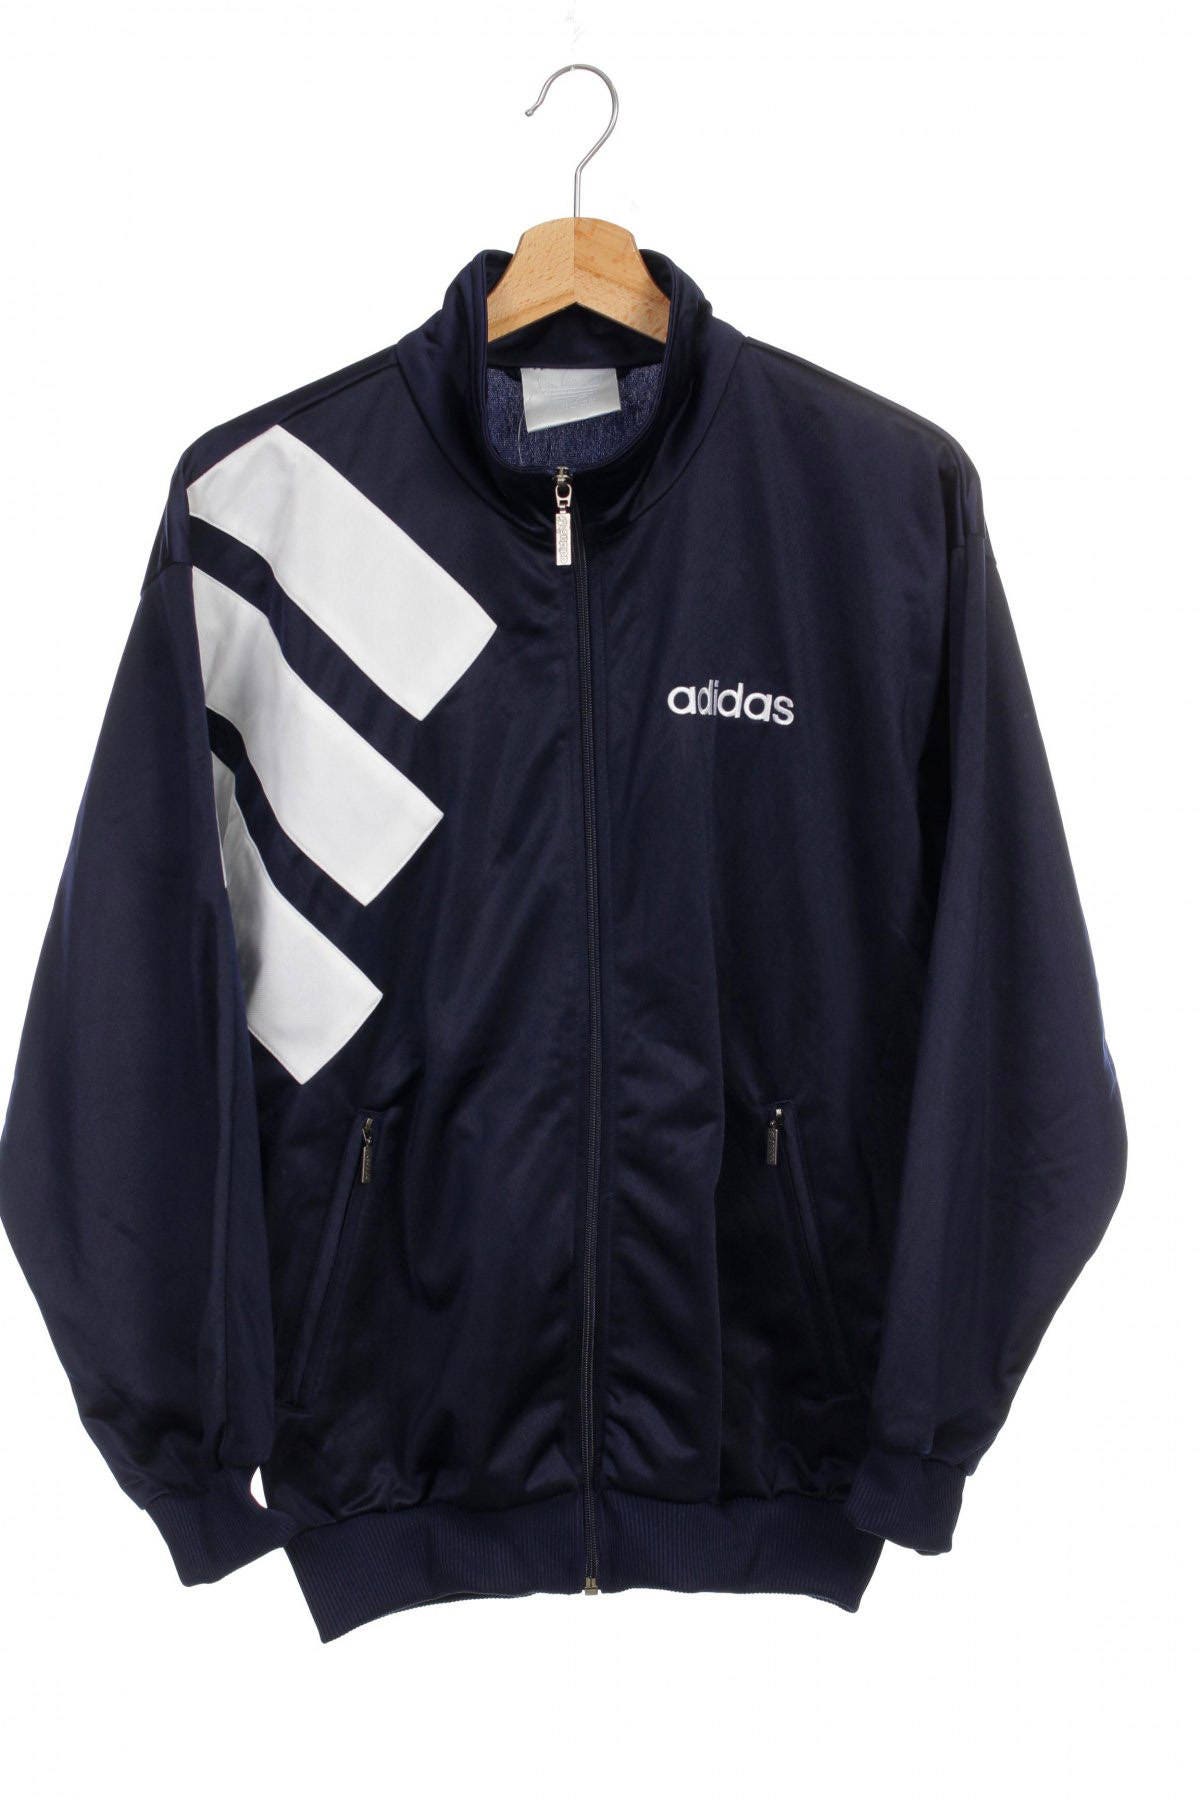 Adidas Jacket 90s. Adidas Jacket 90. Adidas Vintage track Jacket Mens. Куртка adidas Trek. Adidas track